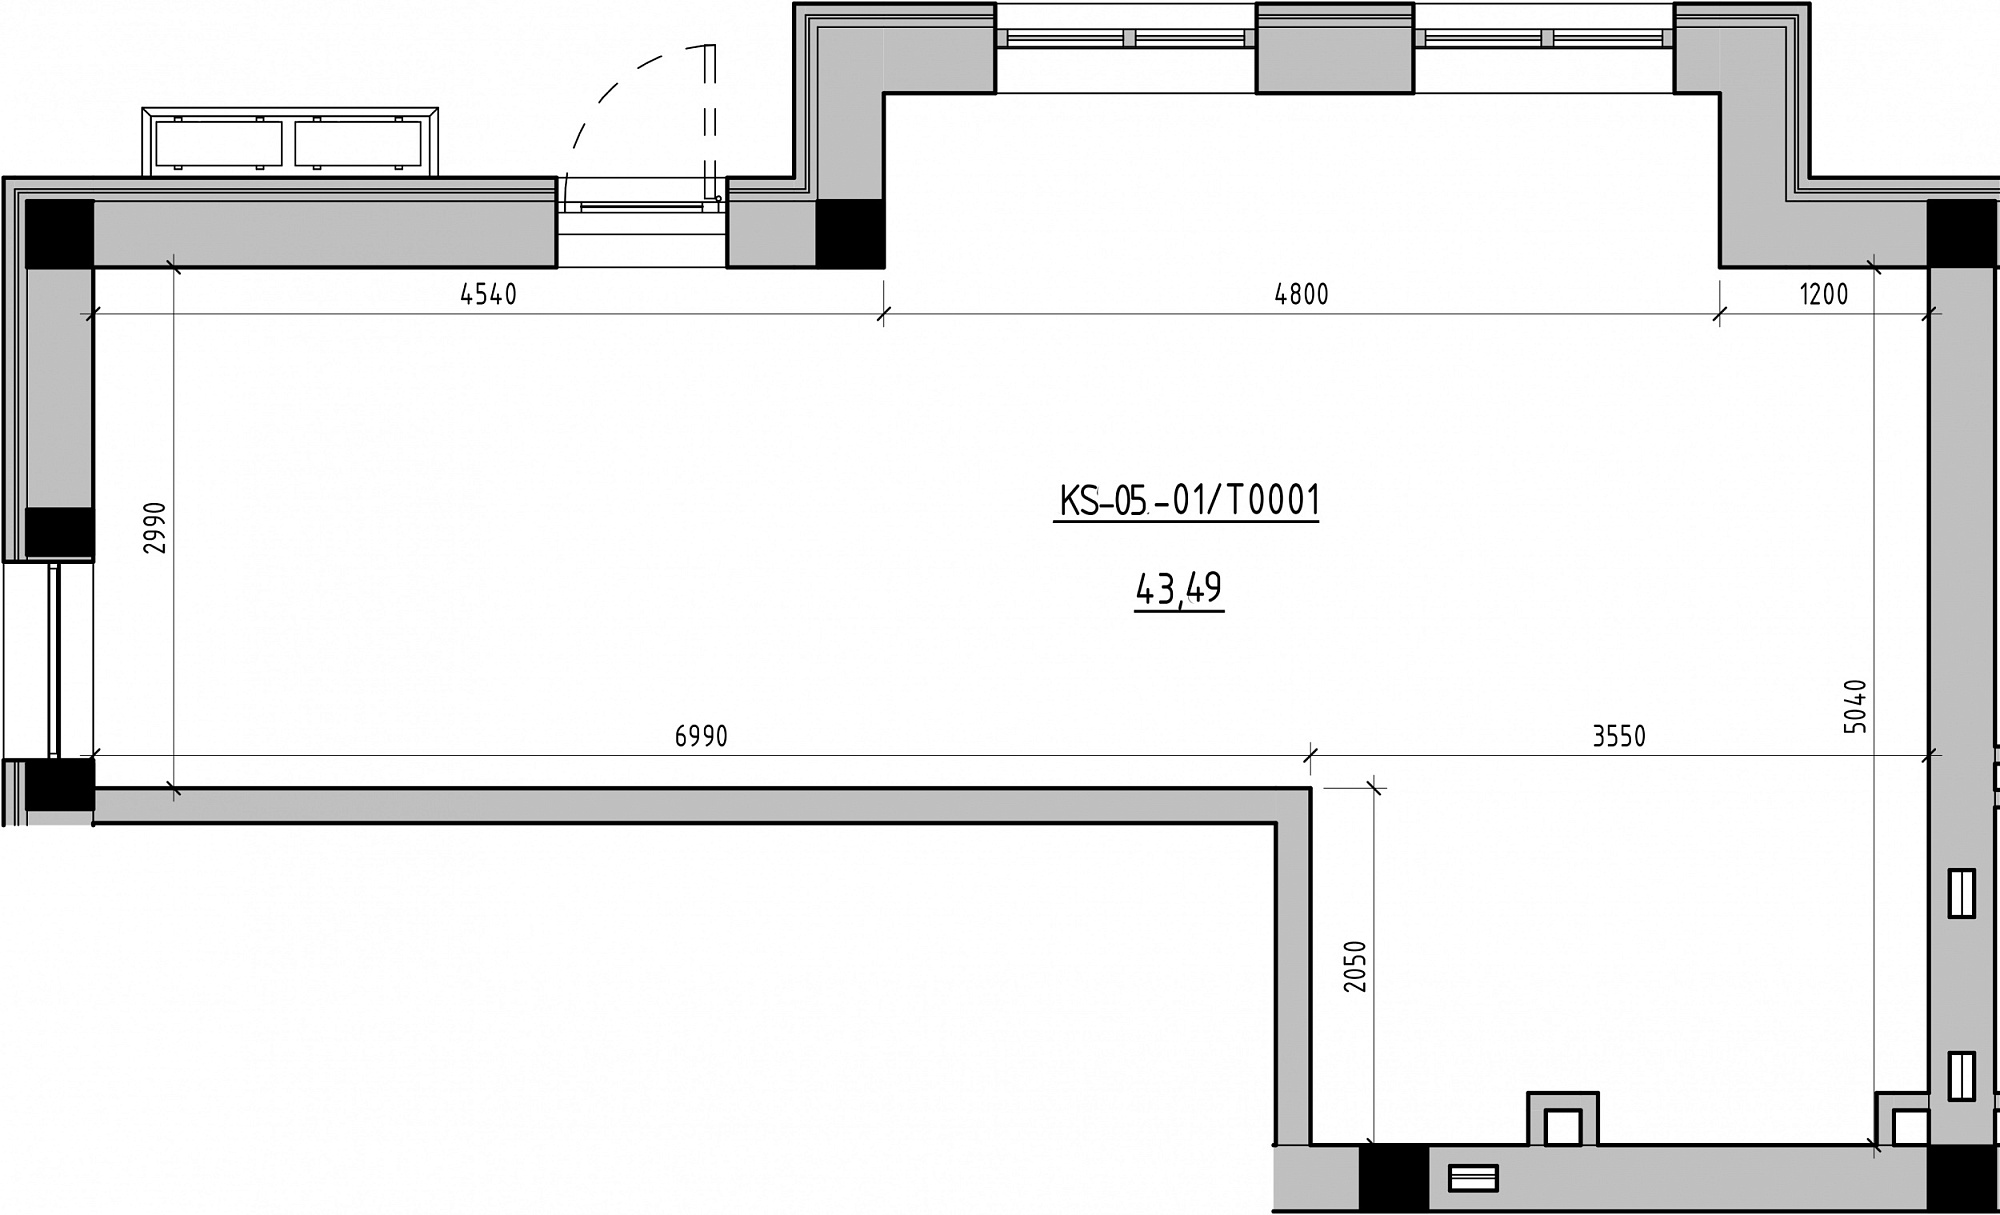 Planning Commercial premises area 43.49m2, KS-005-01/Т001.